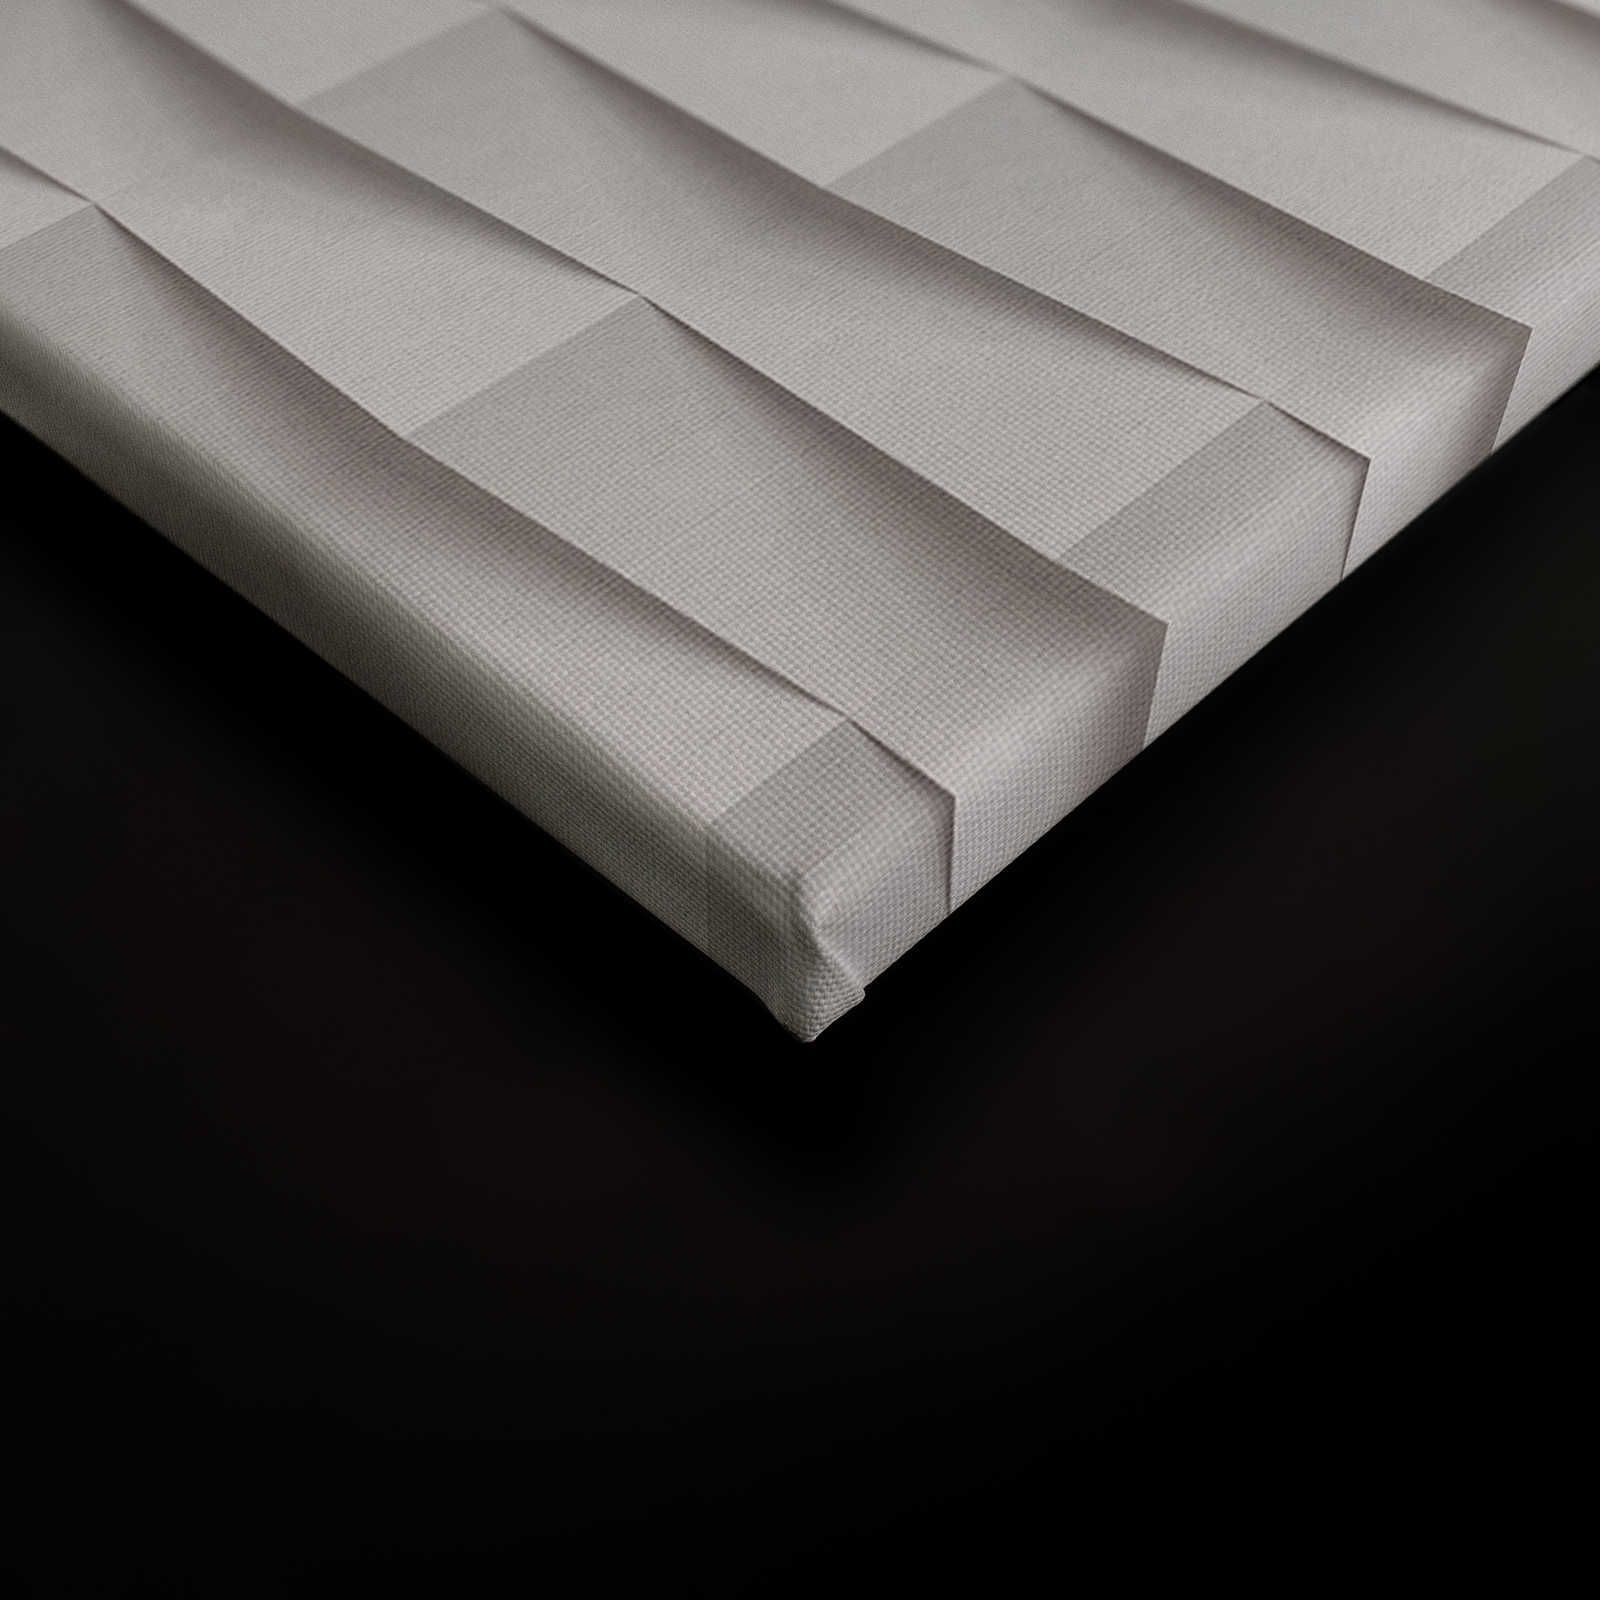             Paper House 2 - 3D toile papier pliage design avec ombres portées - 1,20 m x 0,80 m
        